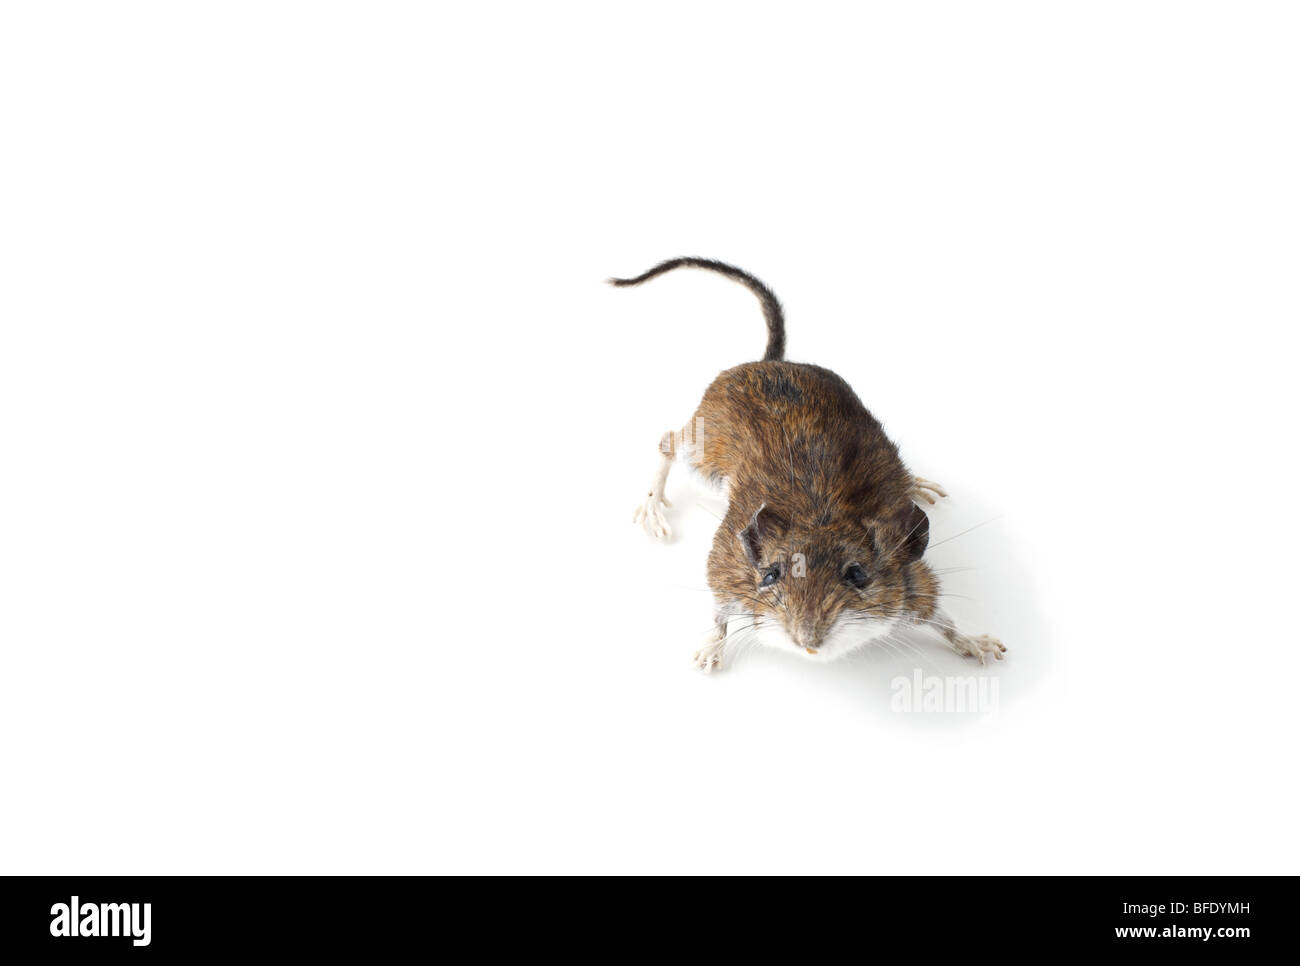 Foto de estudio de un ratón de campo en blanco Foto de stock